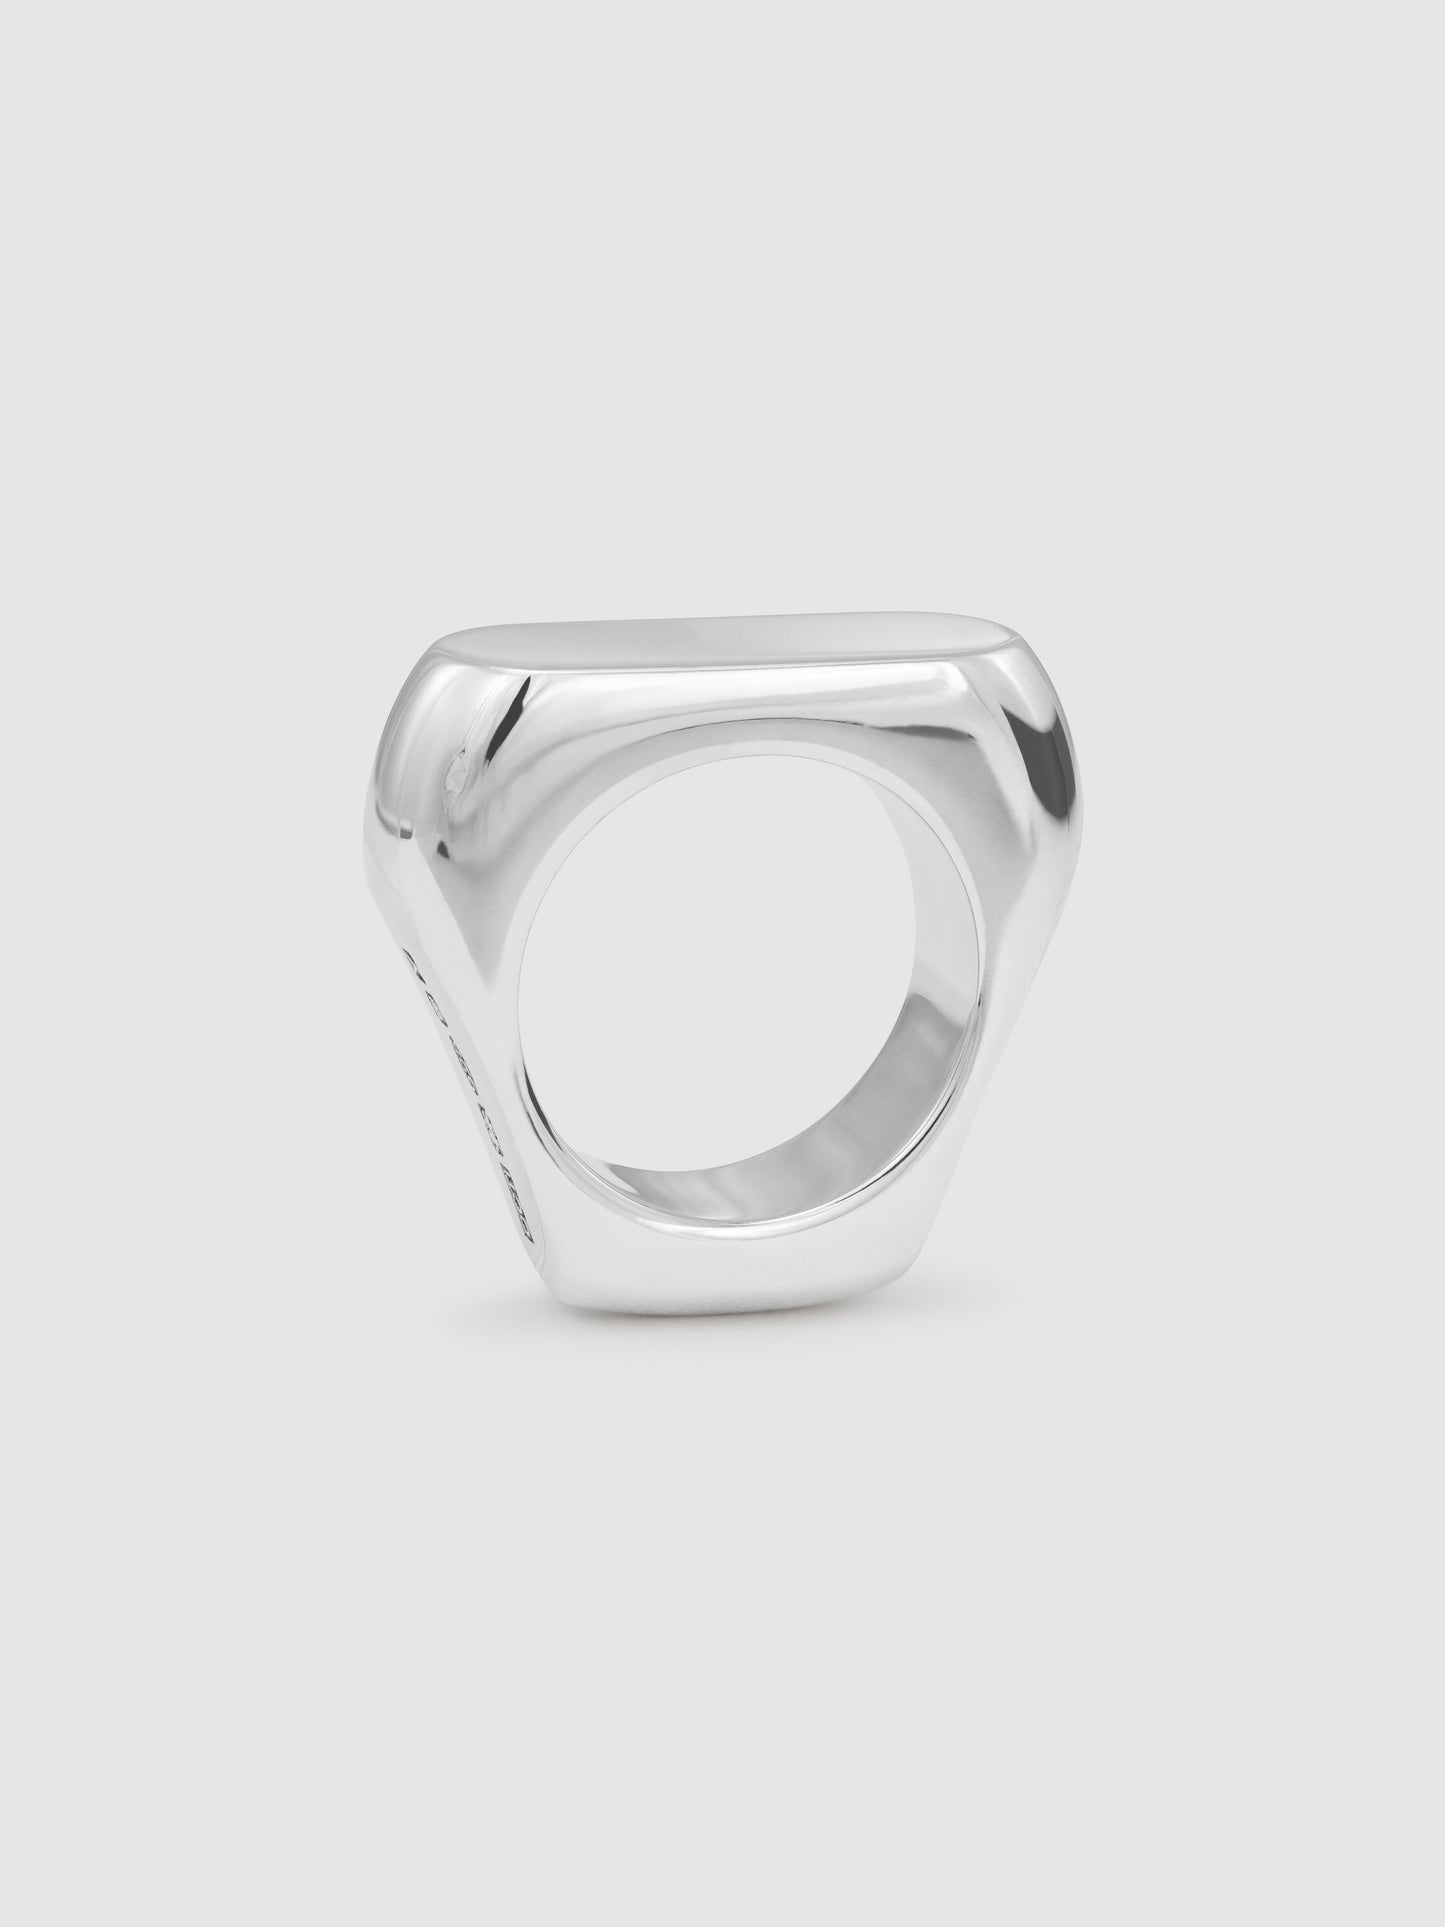 Ergo Ring (size P)